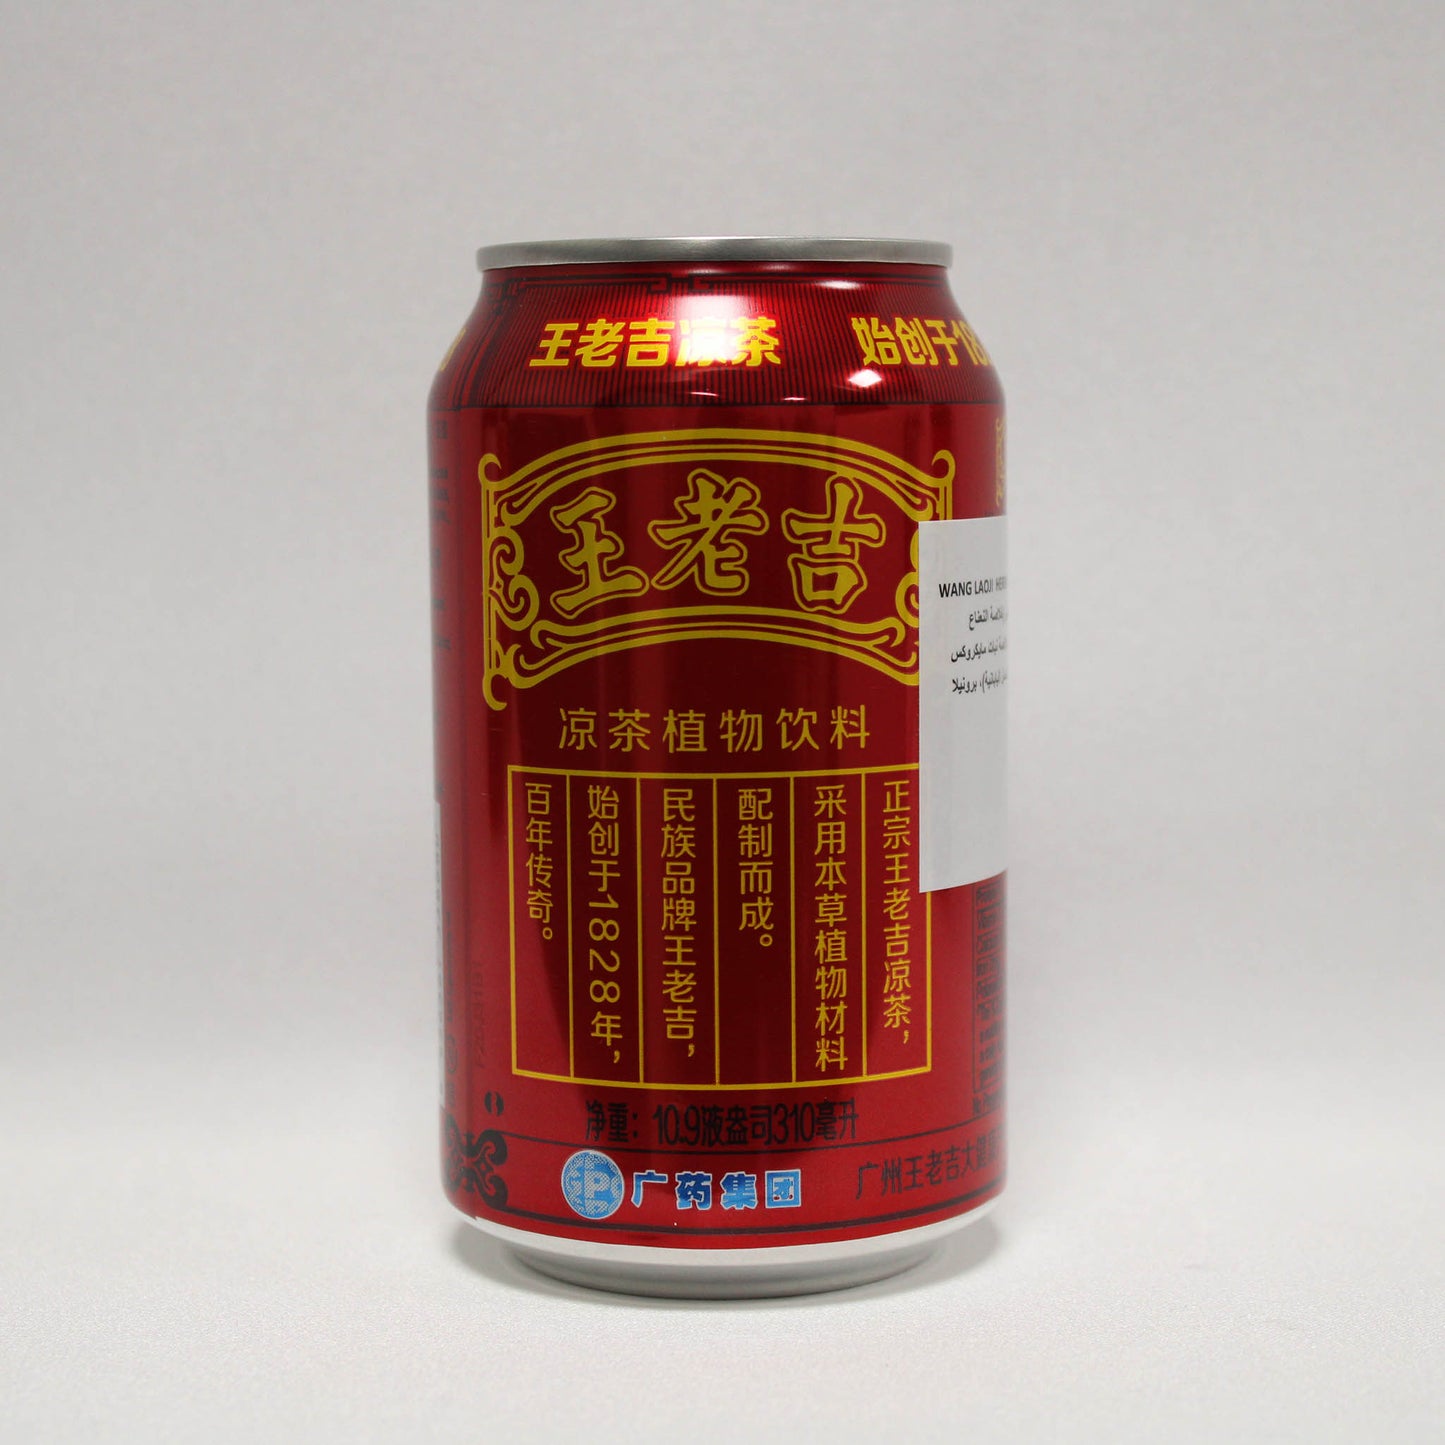 المشروب العشبي الصيني وانغ لوجي (310مل*24)